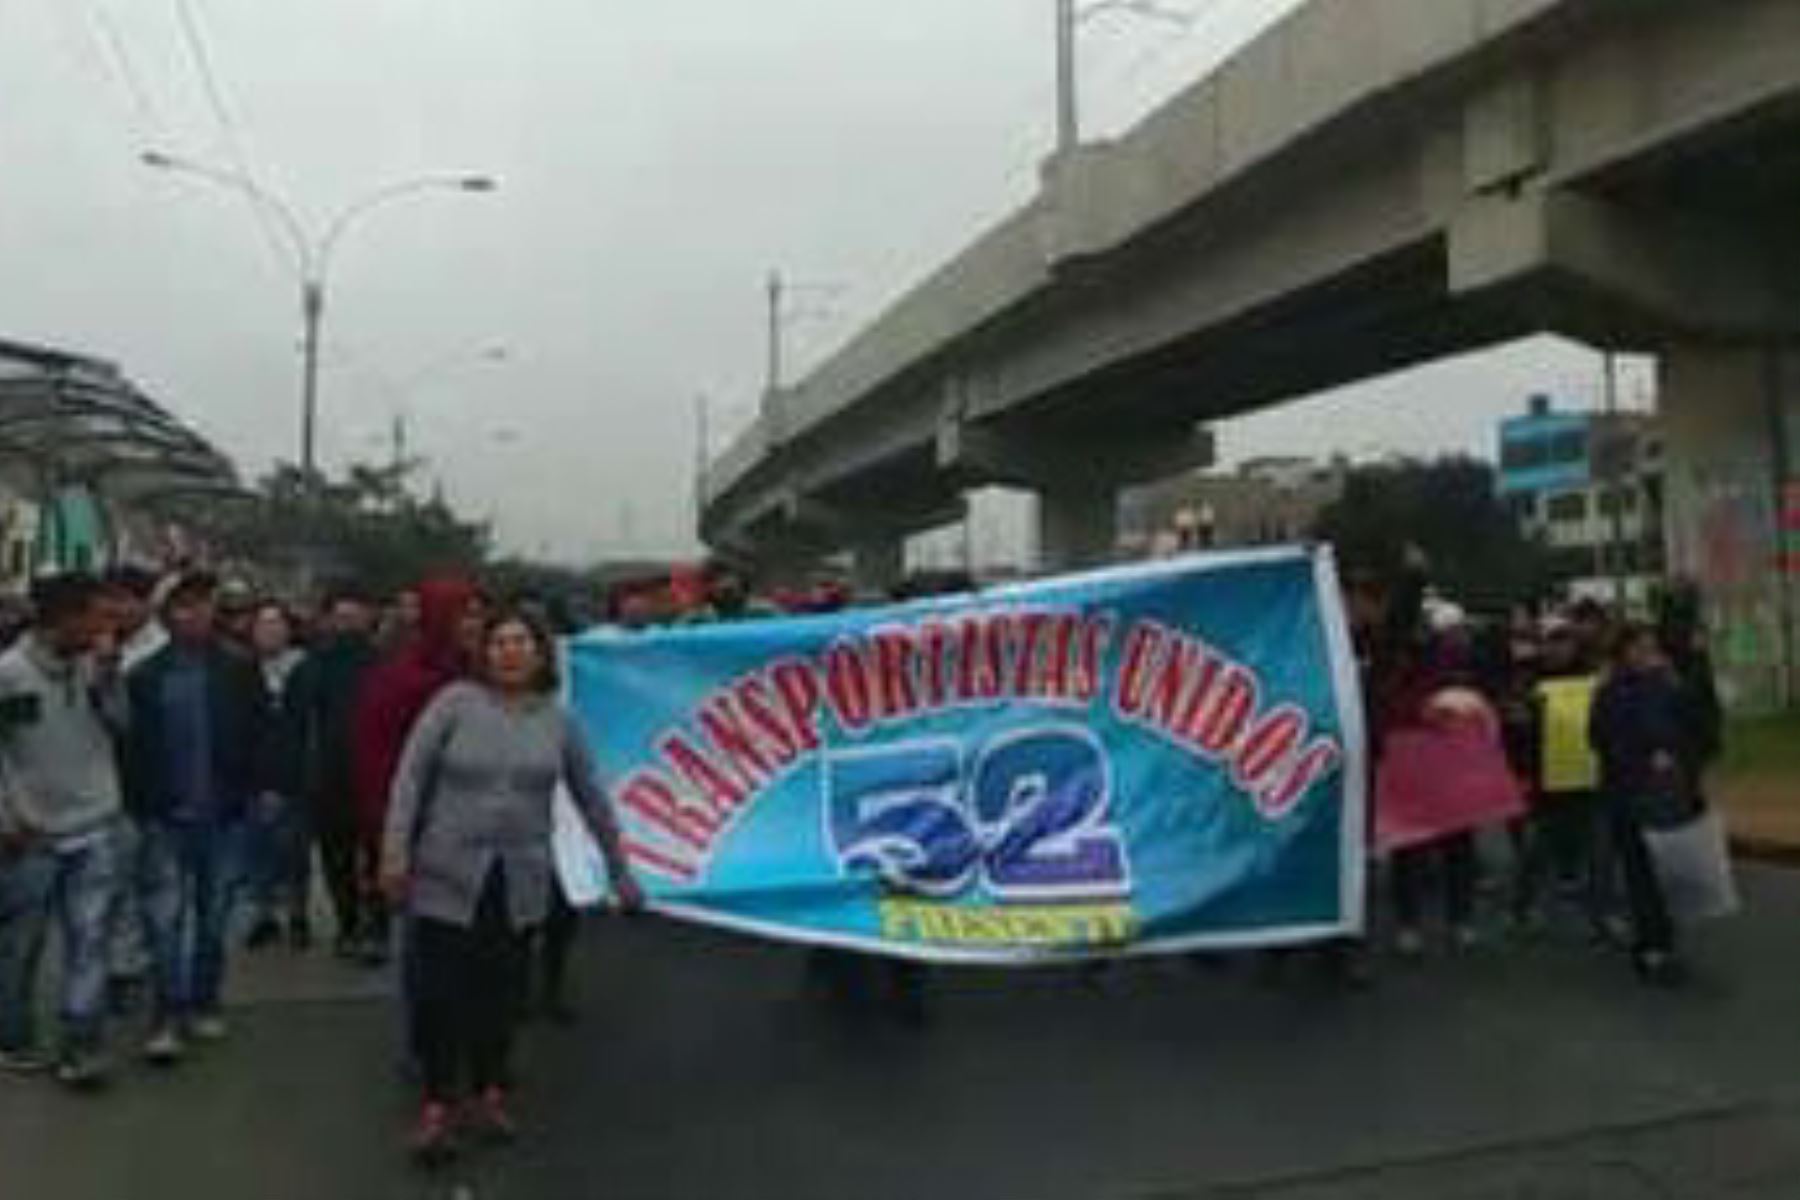 Transportistas protestan contra el Corredor Morado en San Juan de Lurigancho. Foto: Twitter @capital967